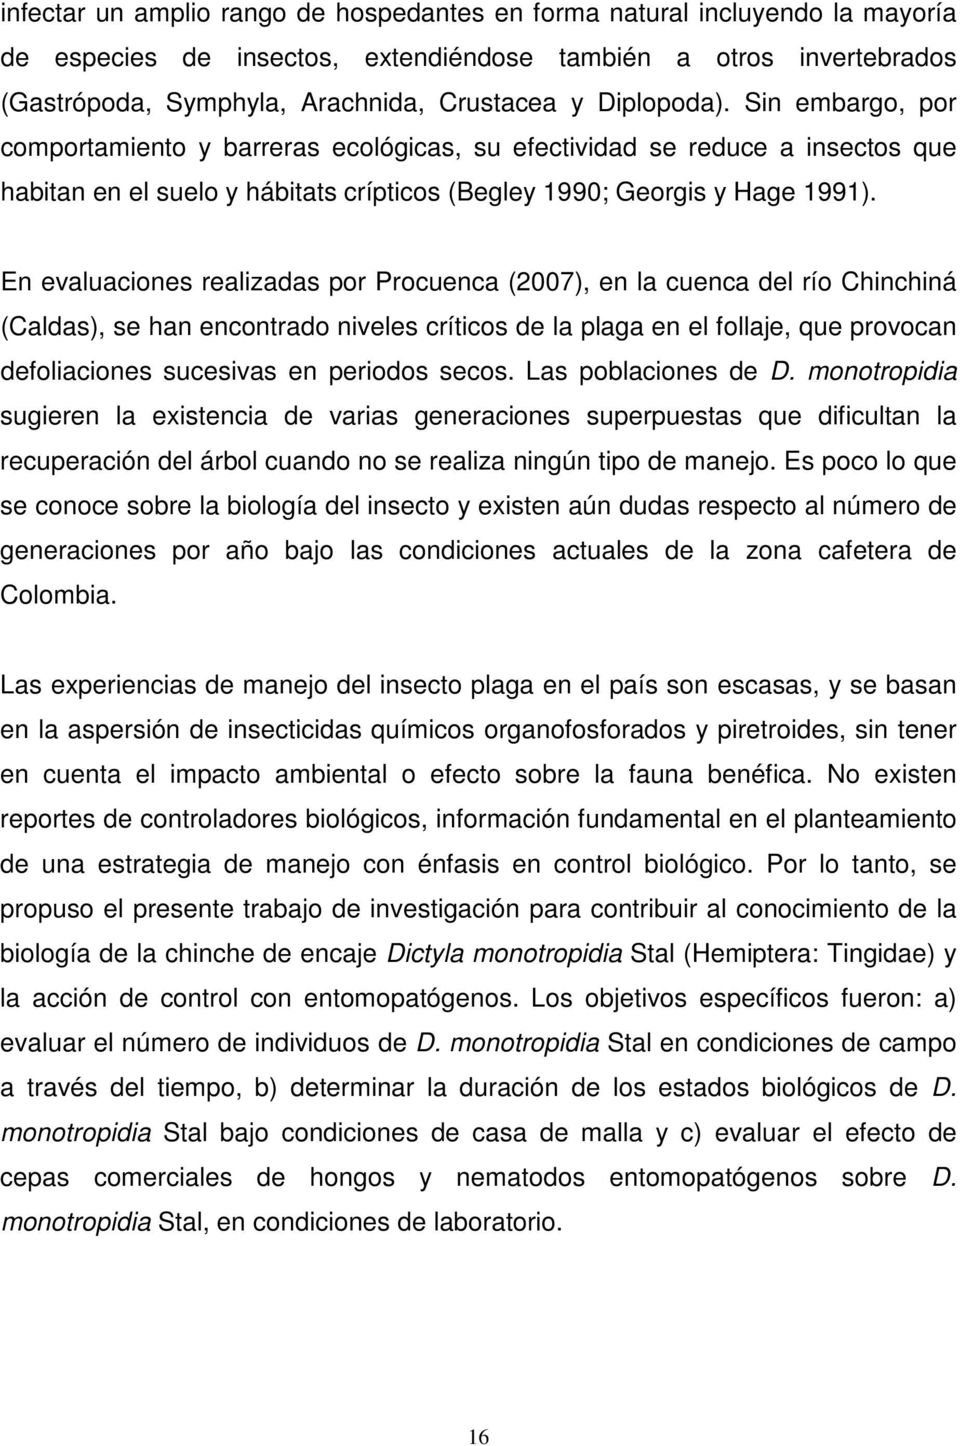 En evaluaciones realizadas por Procuenca (2007), en la cuenca del río Chinchiná (Caldas), se han encontrado niveles críticos de la plaga en el follaje, que provocan defoliaciones sucesivas en